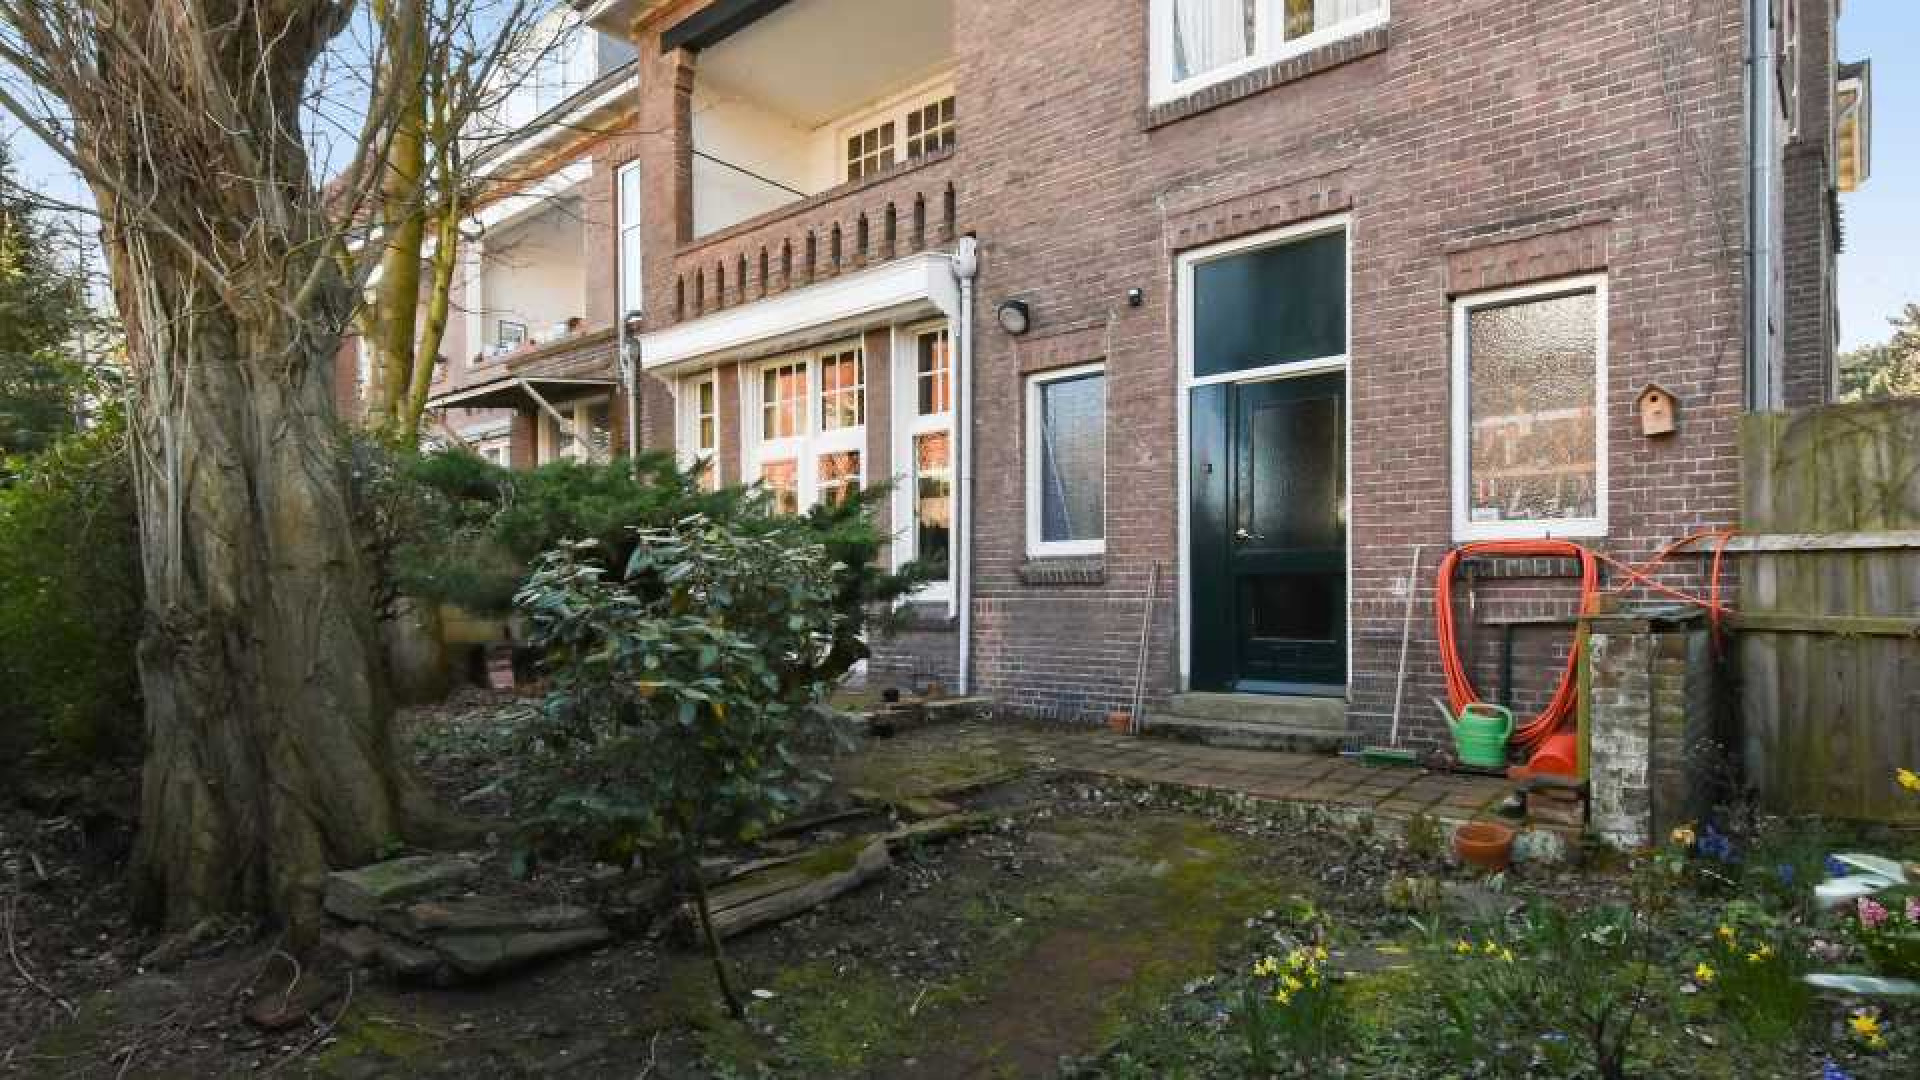 Presentatrice Leonie Ter Braak koopt miljoenenpand in chique Haagse buurt. Zie foto's 14